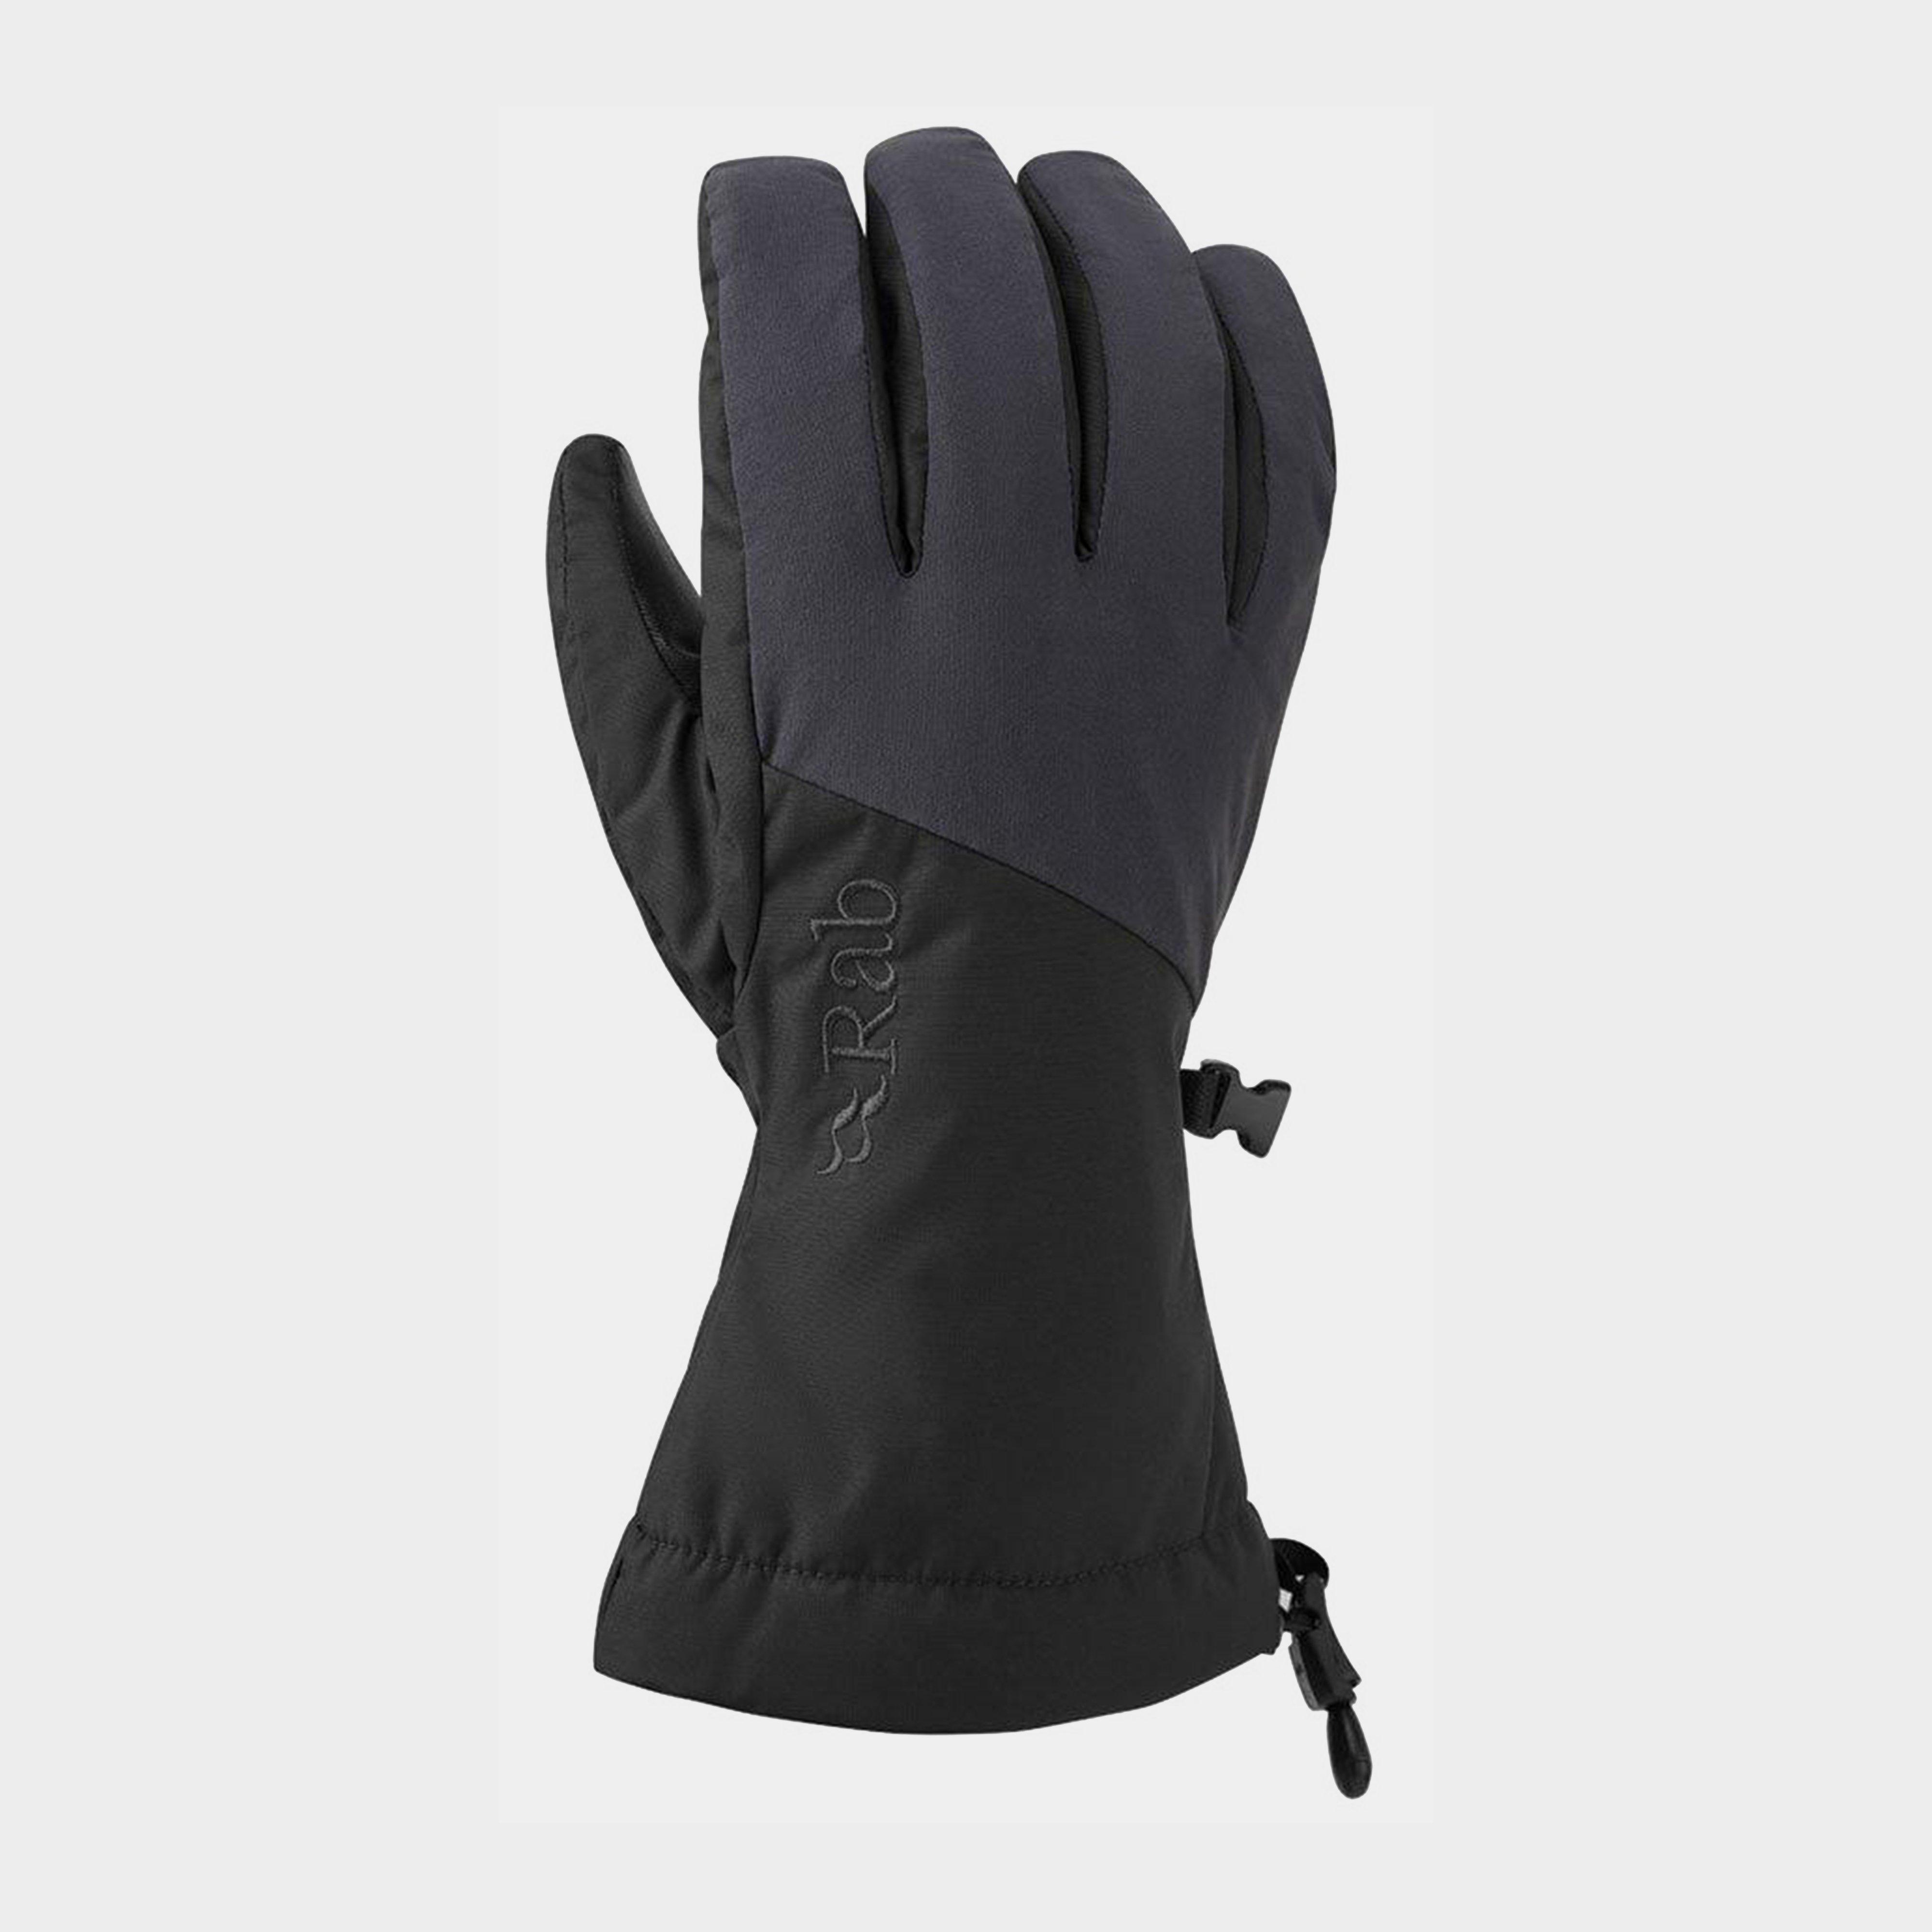 Rab Pinnacle GTX Gloves Review